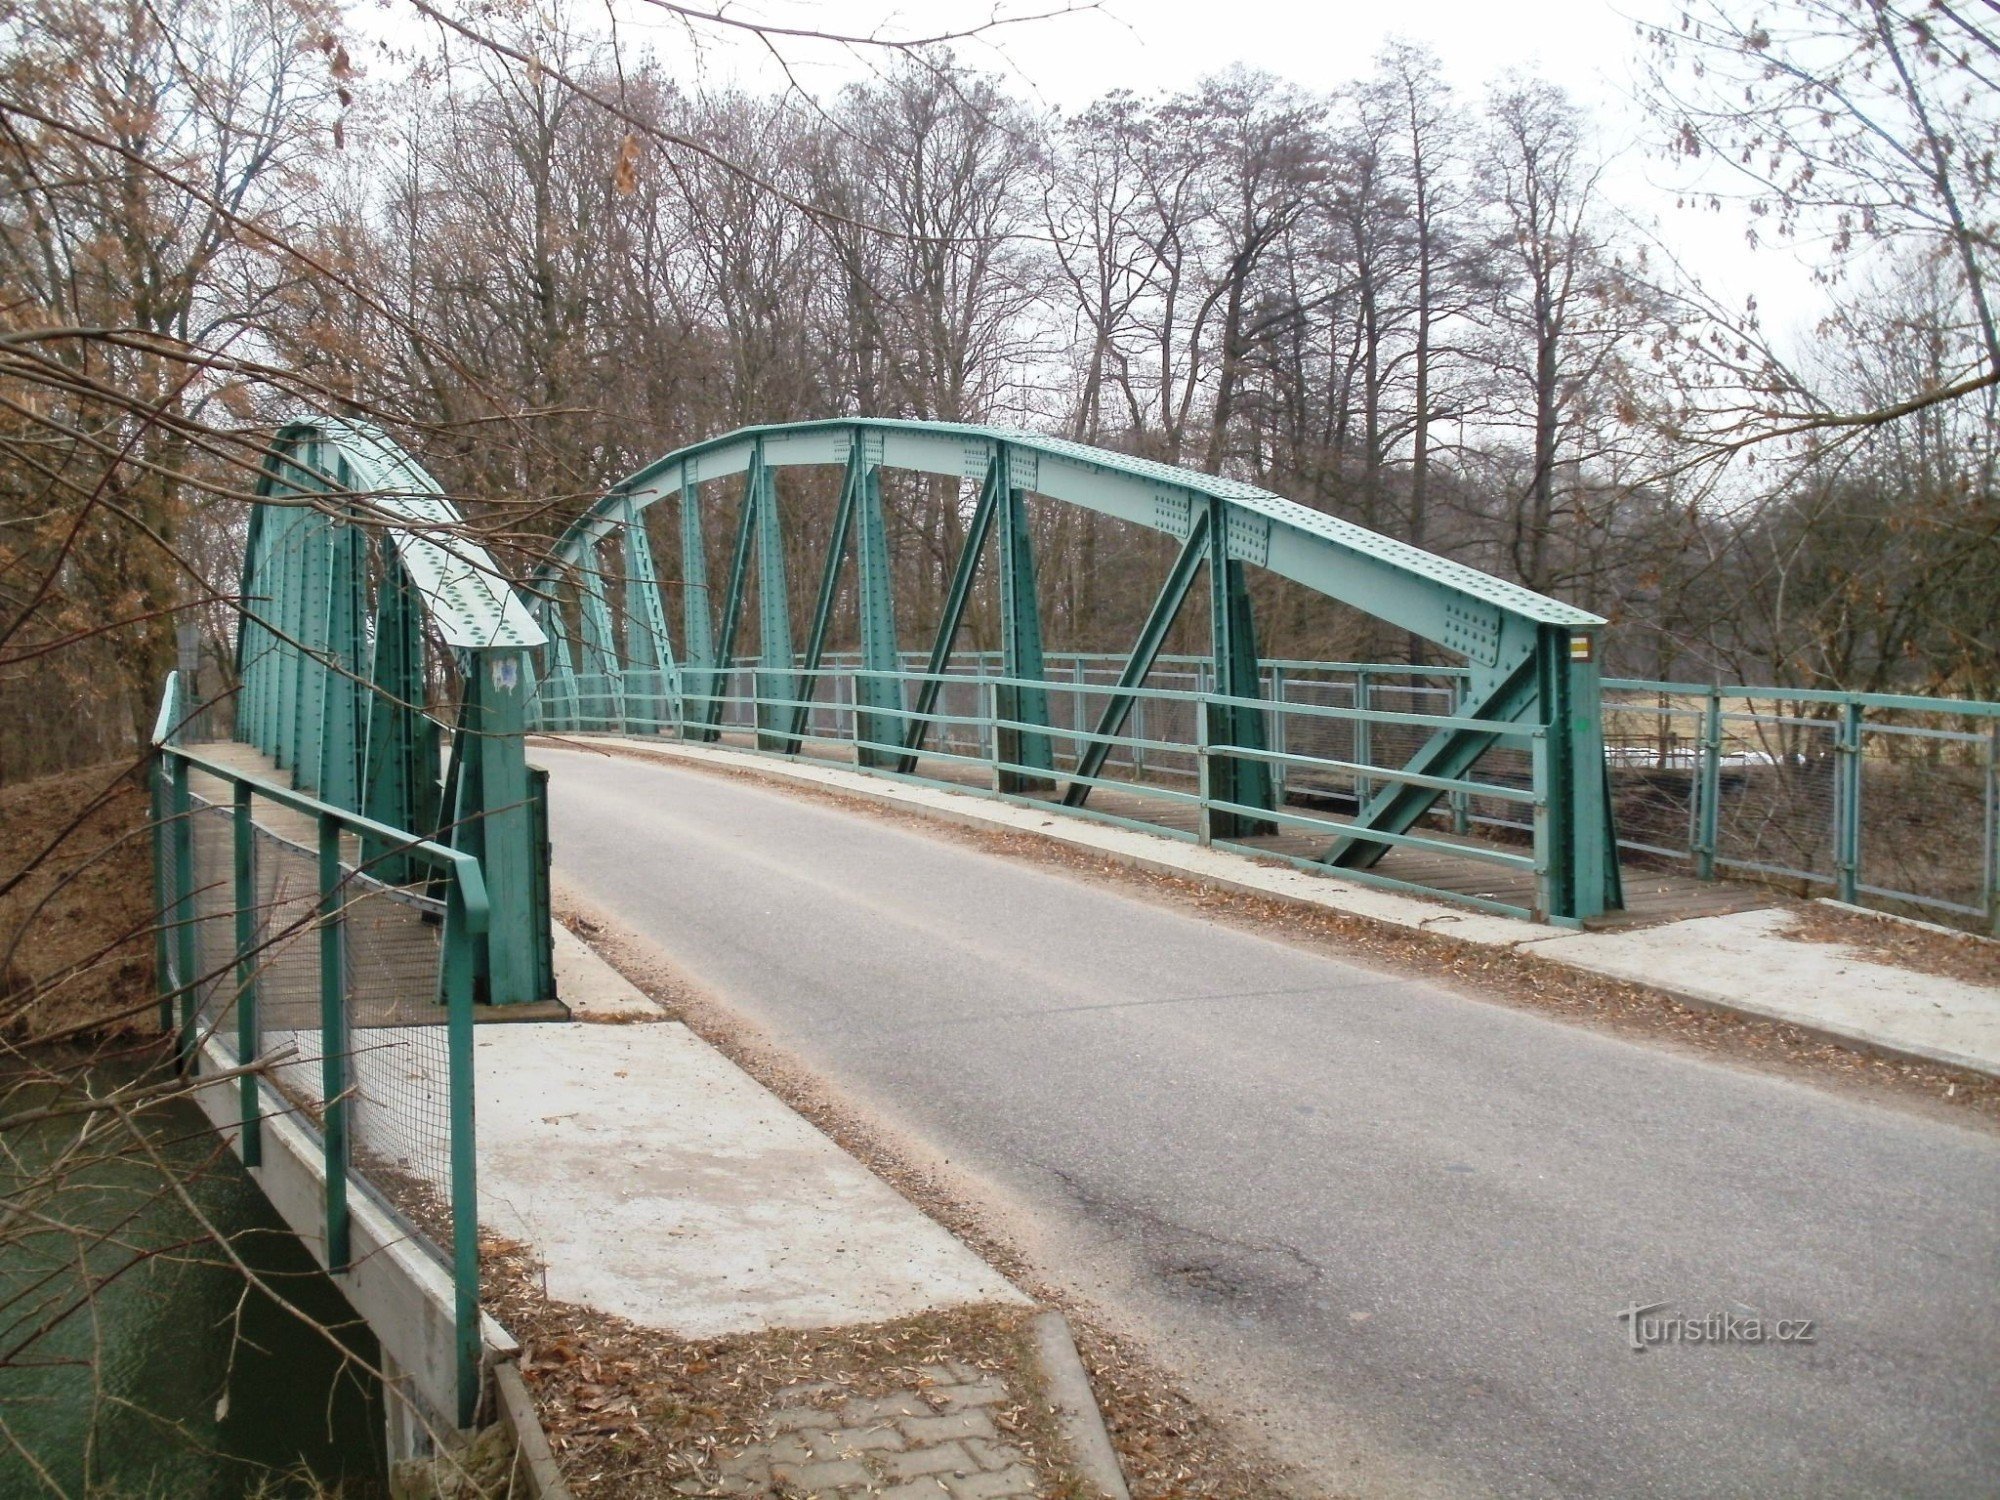 Lochenice - żelazny most